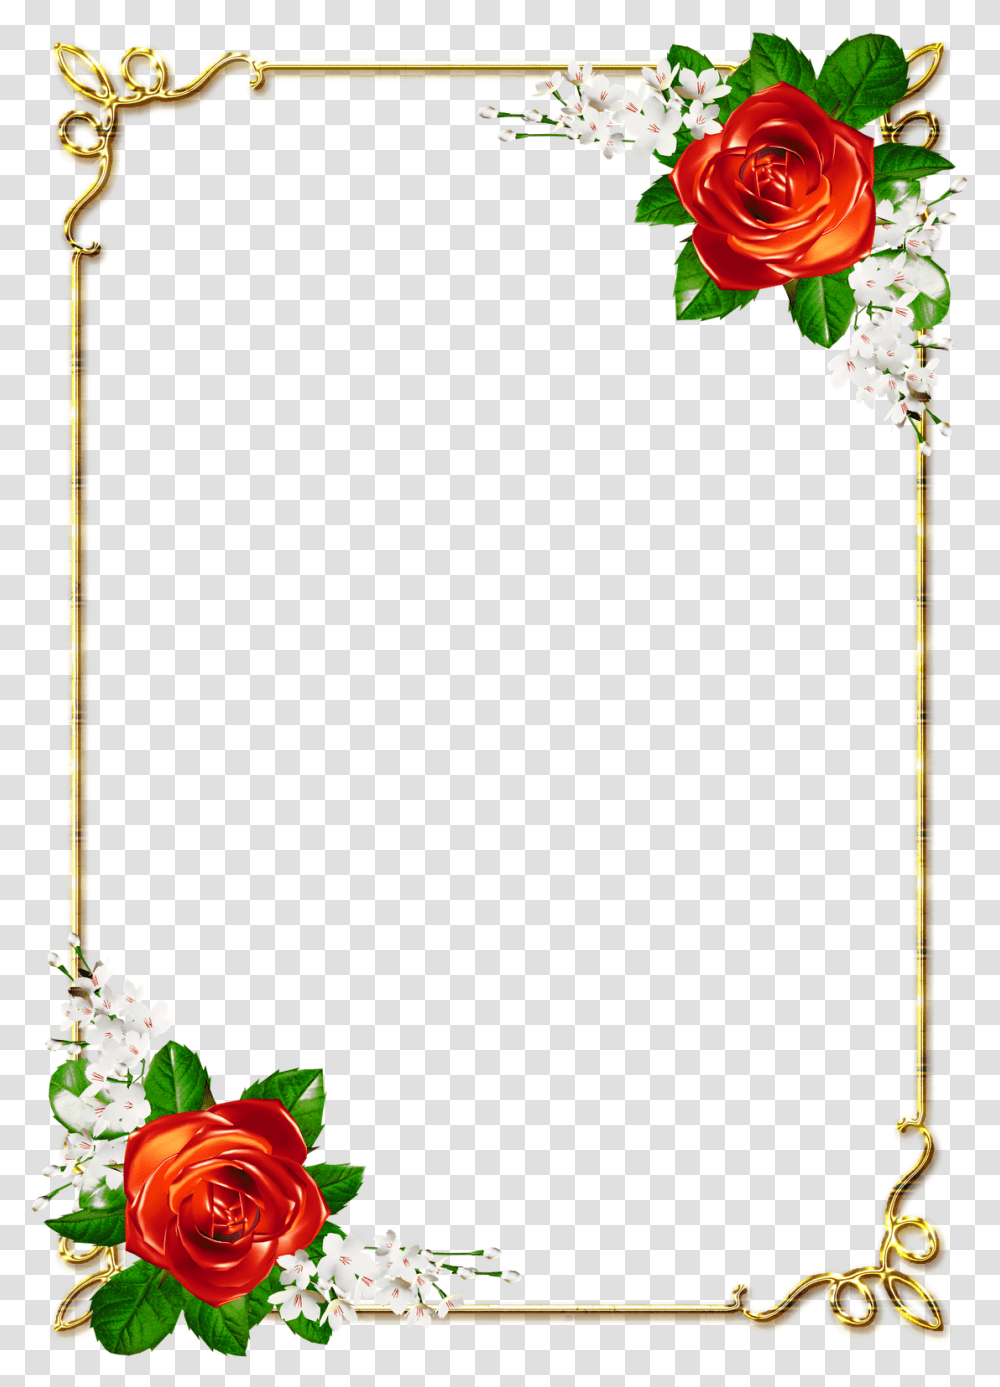 Flower, Plant, Blossom, Flower Arrangement, Flower Bouquet Transparent Png